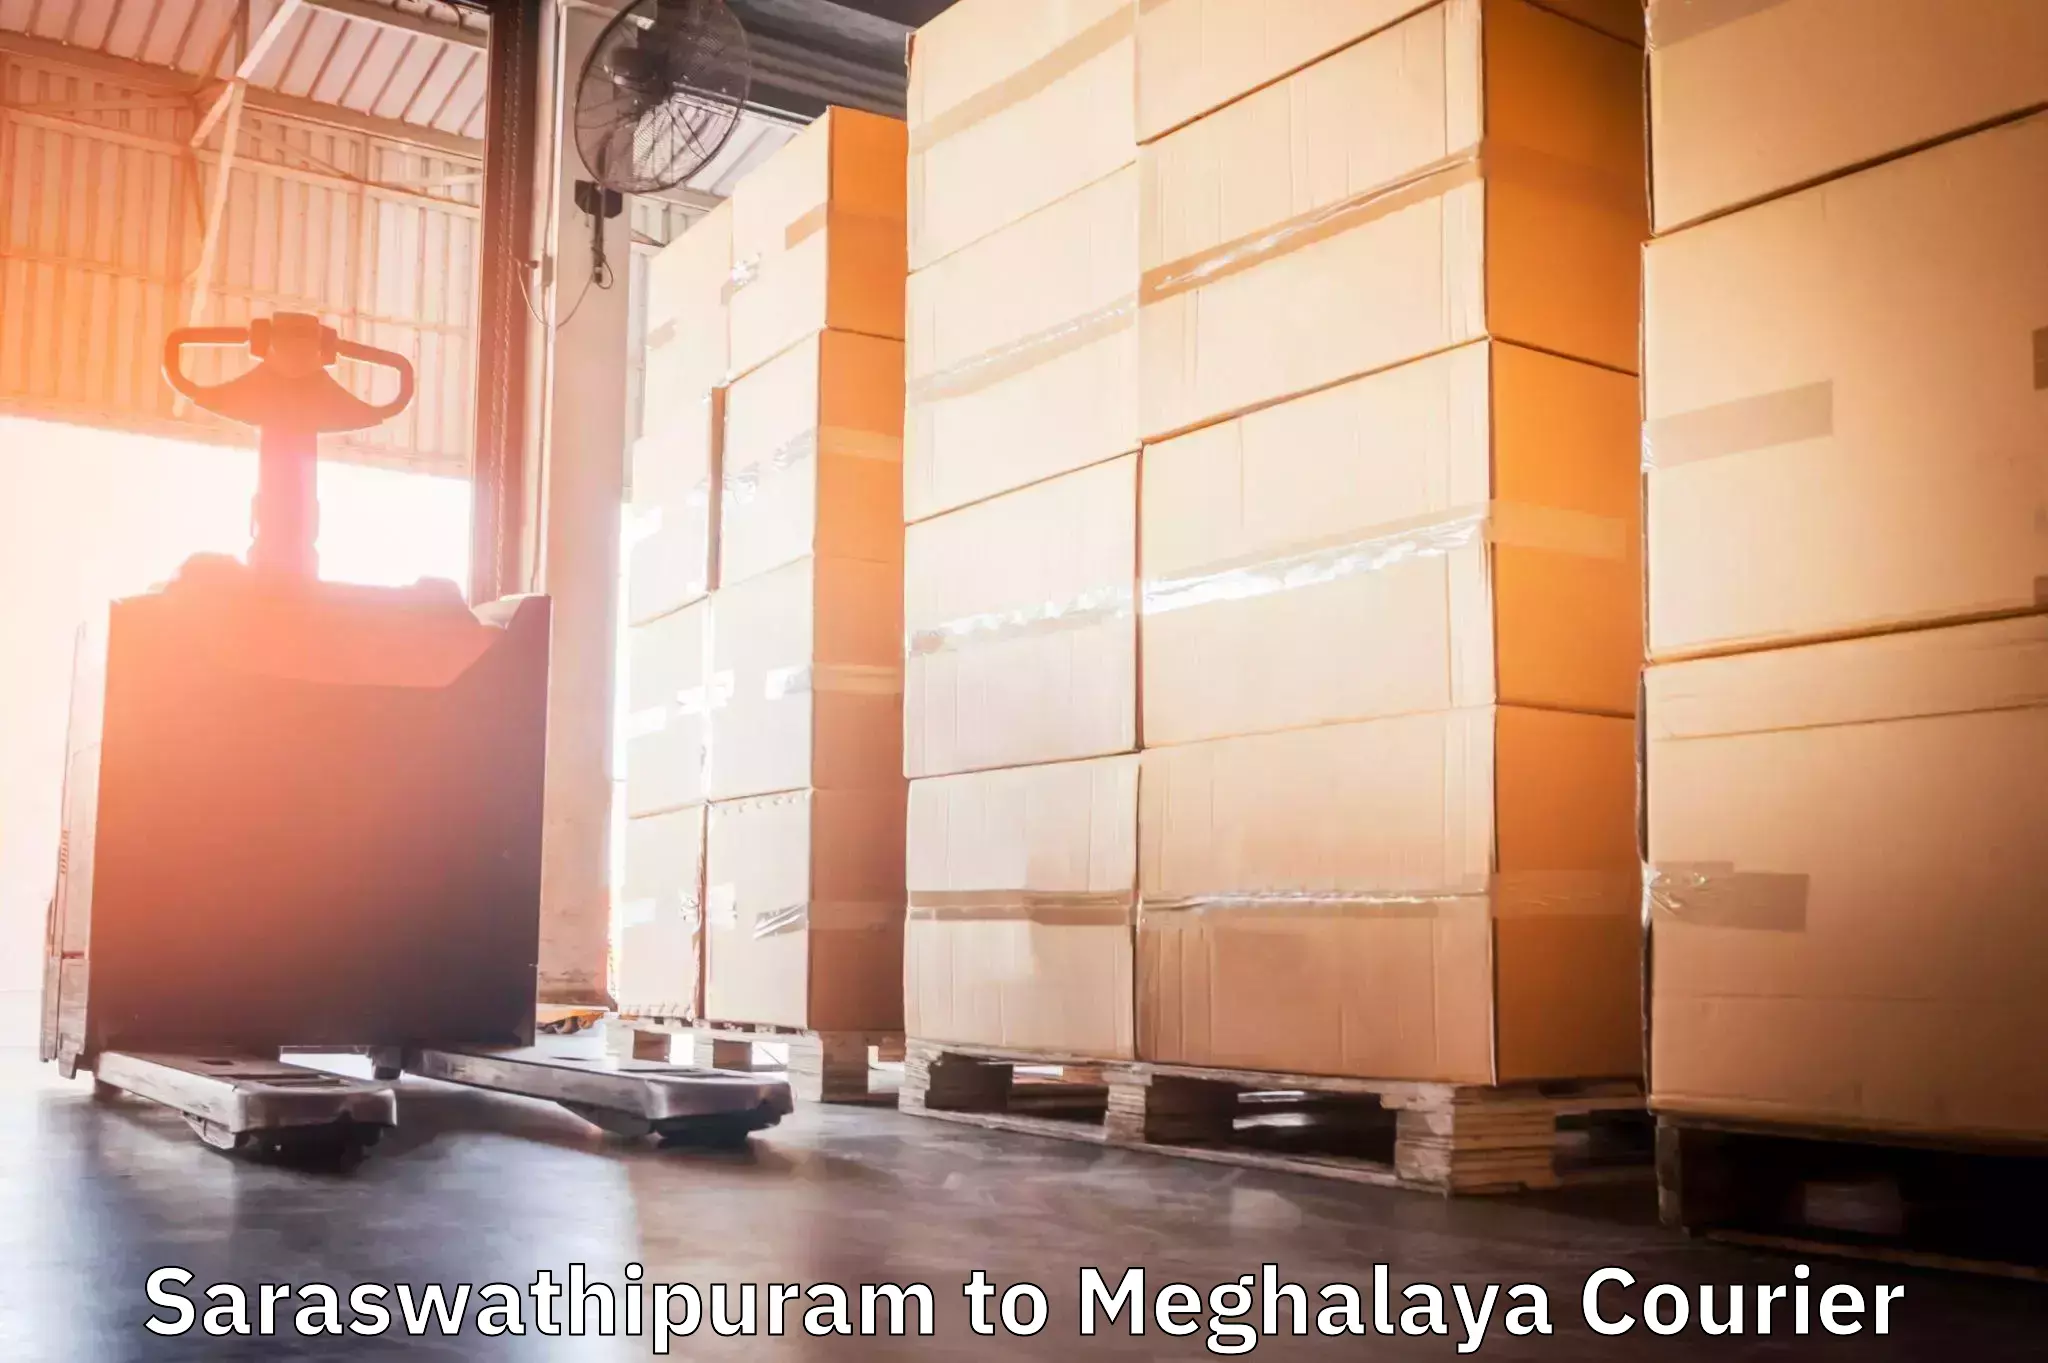 Multi-package shipping Saraswathipuram to NIT Meghalaya